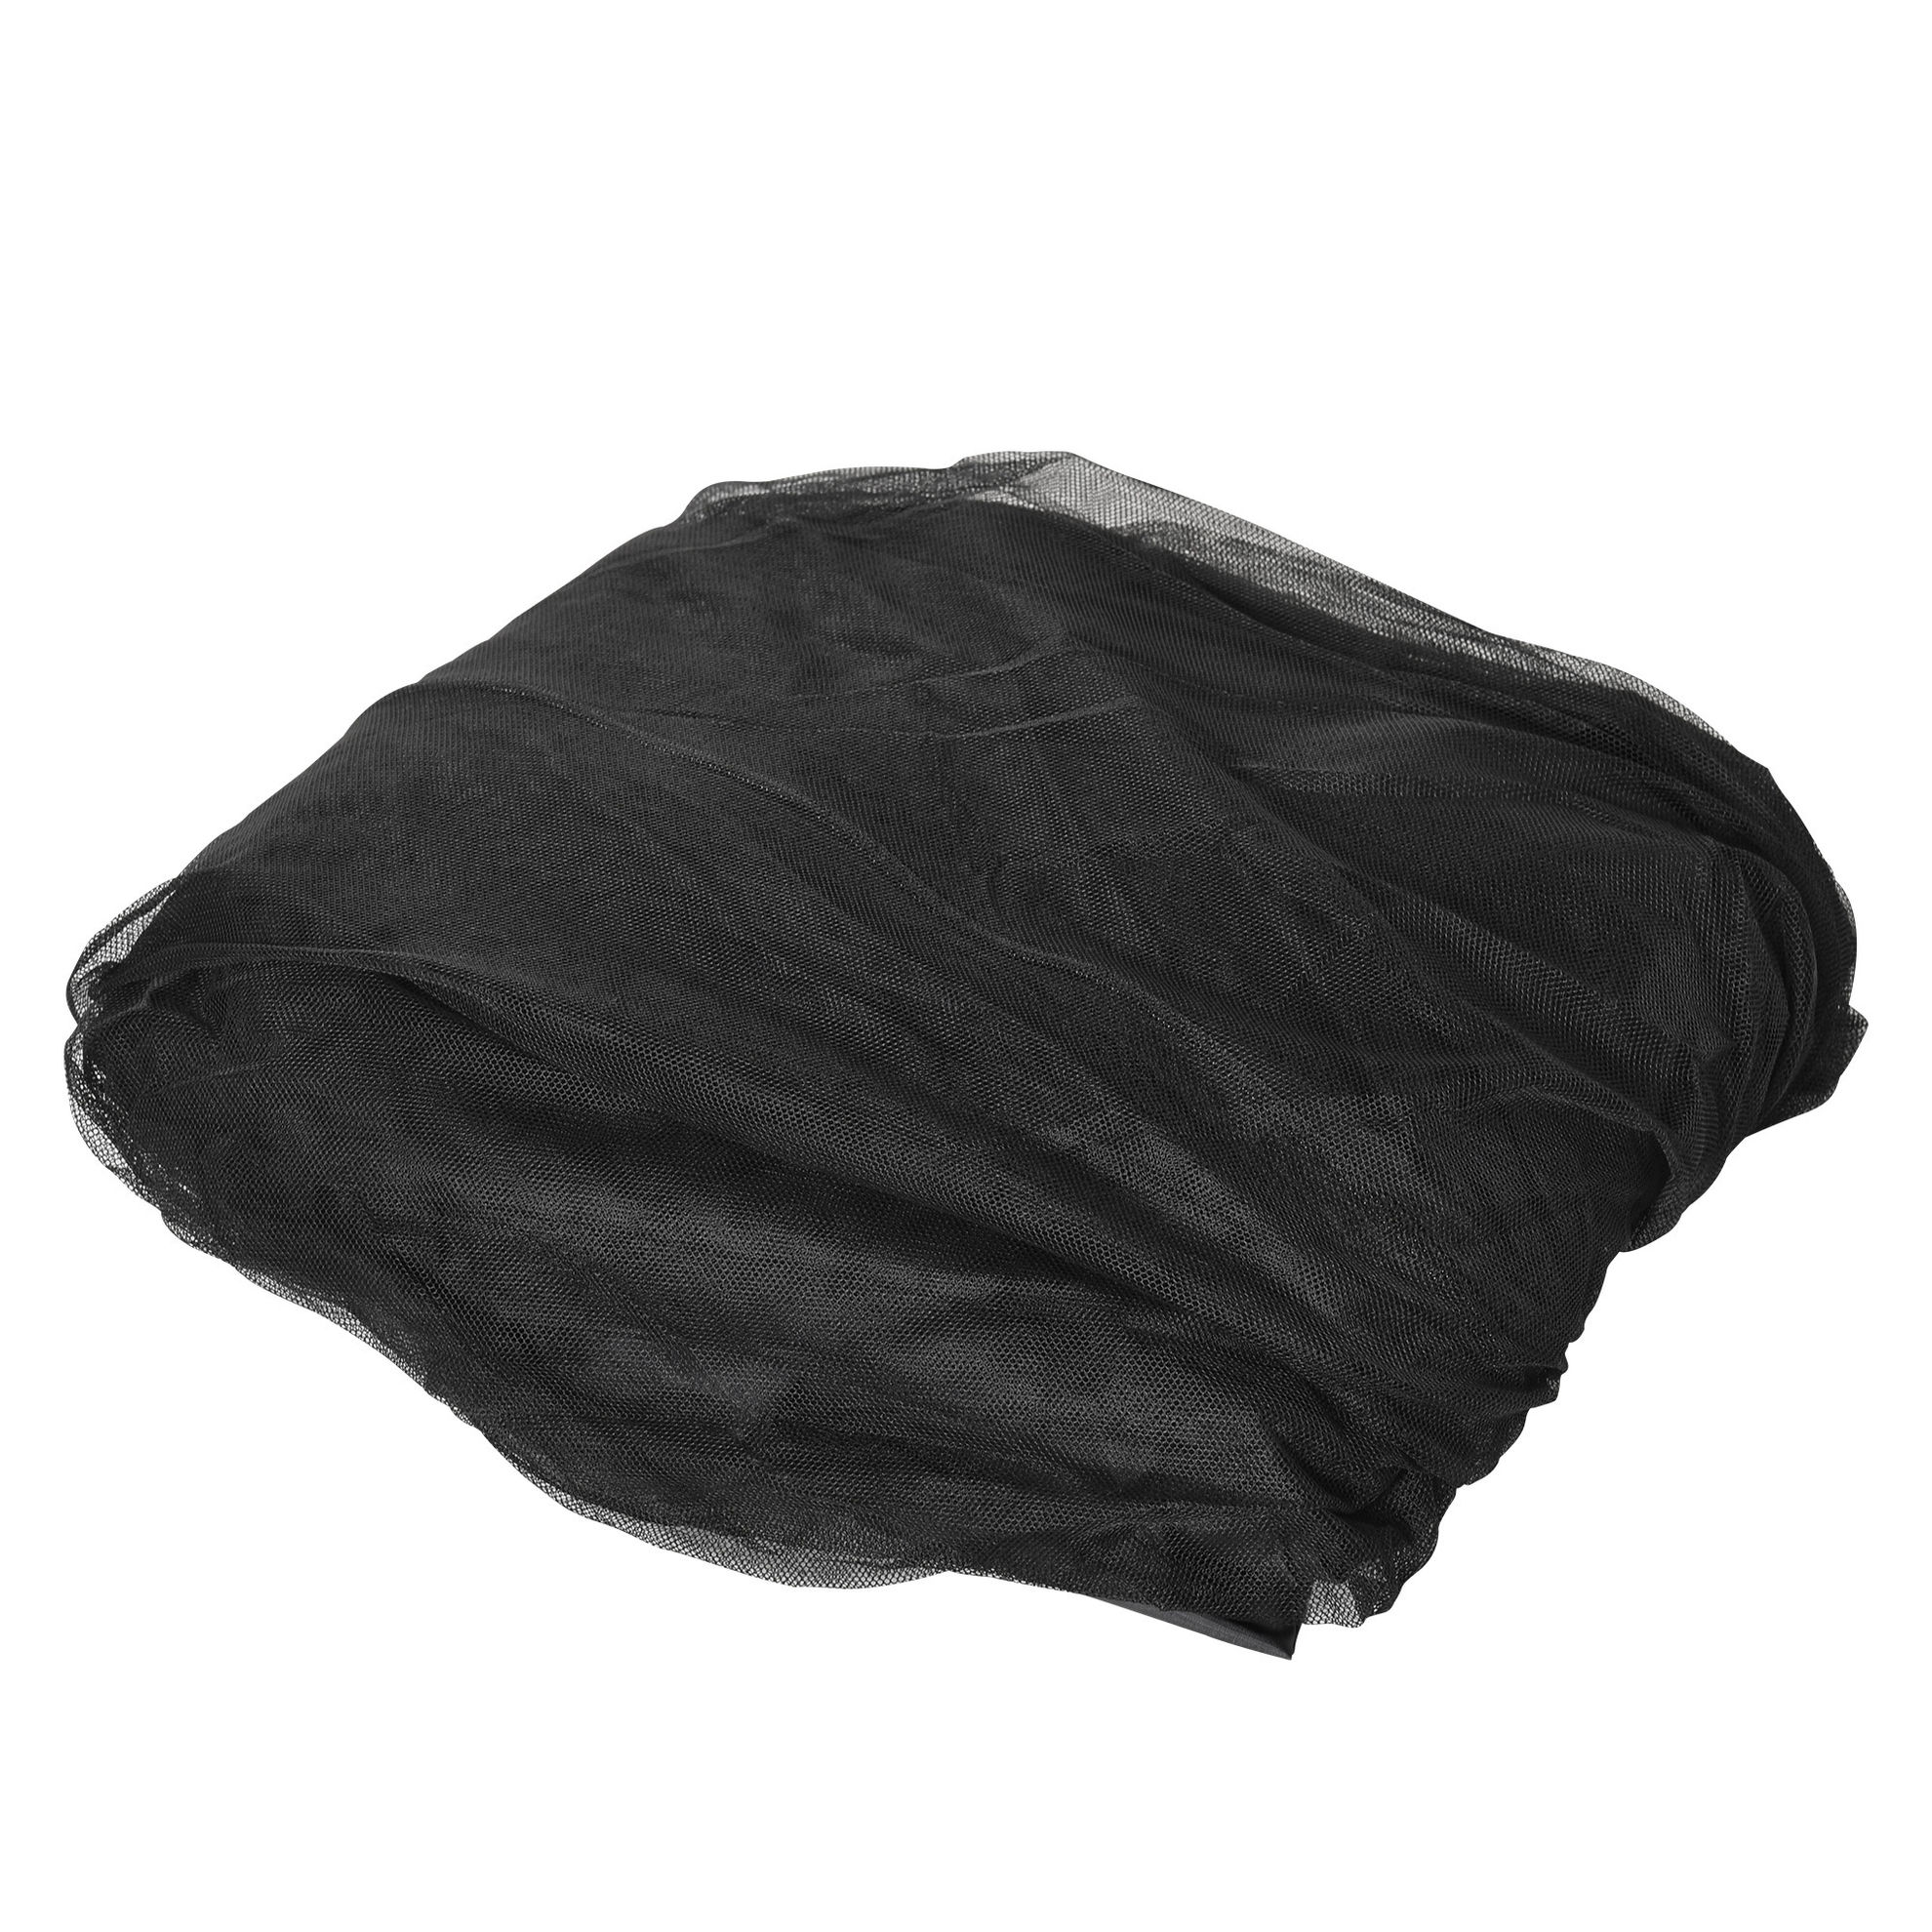 Moskitonetz für Sonnenschirm Farbe: schwarz, Größe: 300 x 230 cm ØxH